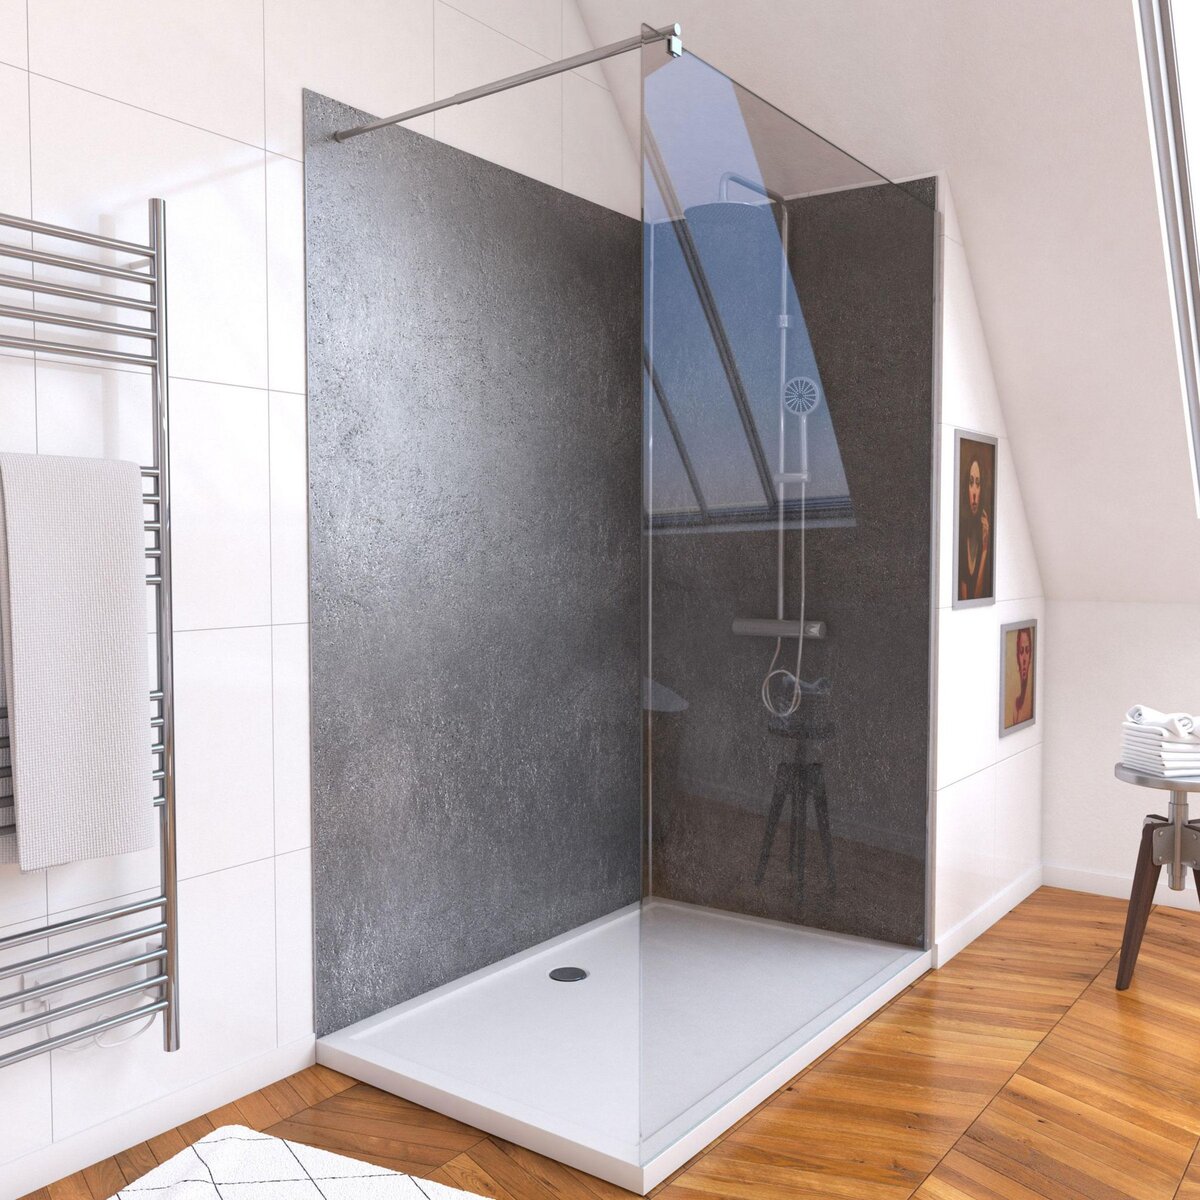 Aurlane Ensemble complet douche à l'Italiennne avec Receveur 120x90 + Paroi transparent + Panneaux muraux